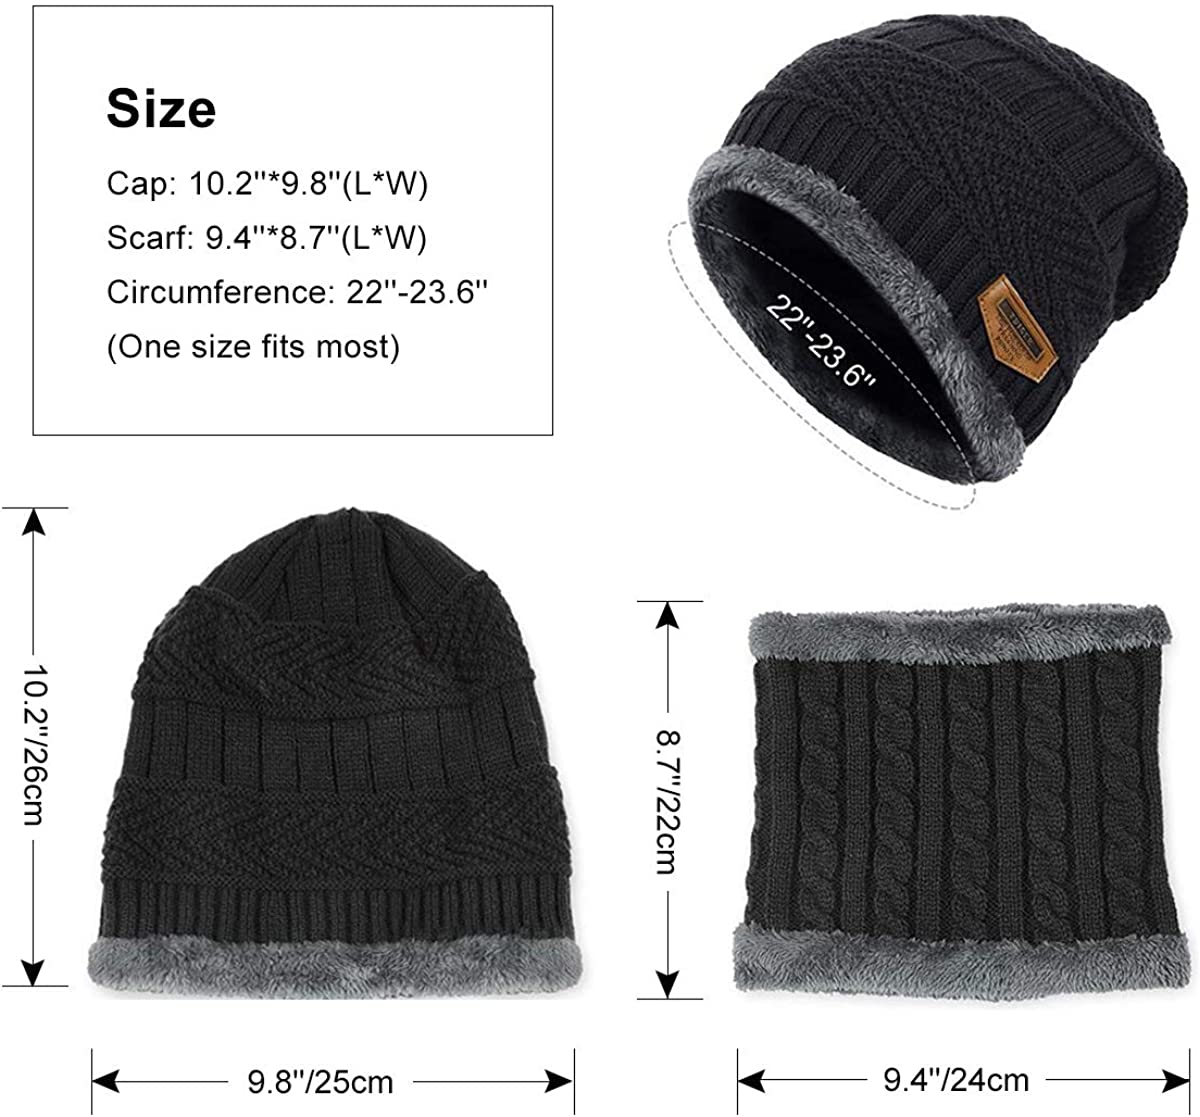 ZIBUYU Winter Hat for Men Women Warm Knitted Hats with Neck Gaiter Knitted Scarf, Warm Winter Hat Scarf Set Beanie Cap Hat Neck Warmer Scarf (black)